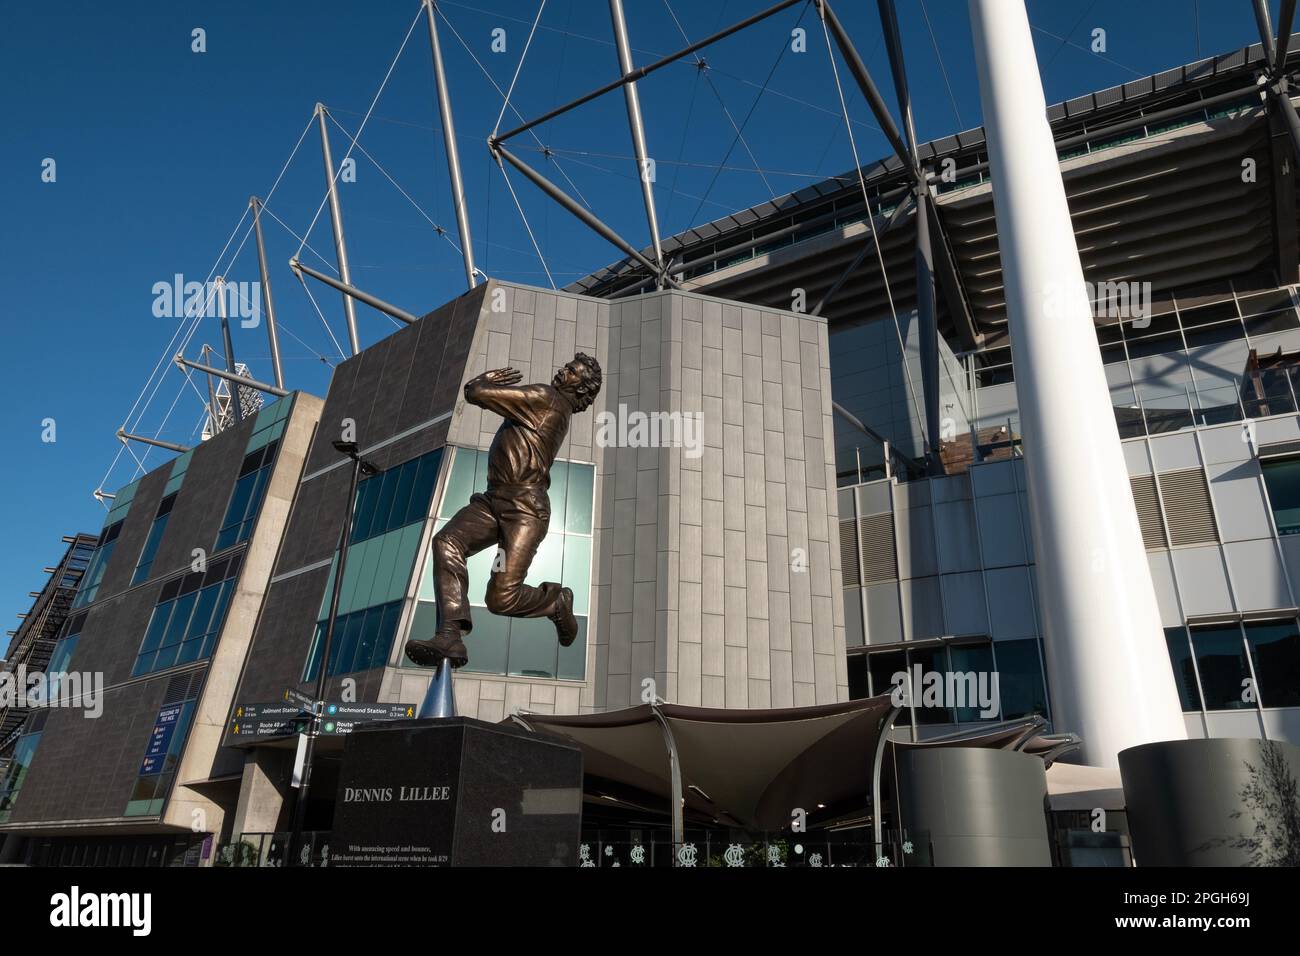 Una statua commemorativa della leggenda del cricket Dennis Lillee fuori dal MCG a Melbourne, Victoria, Australia Foto Stock